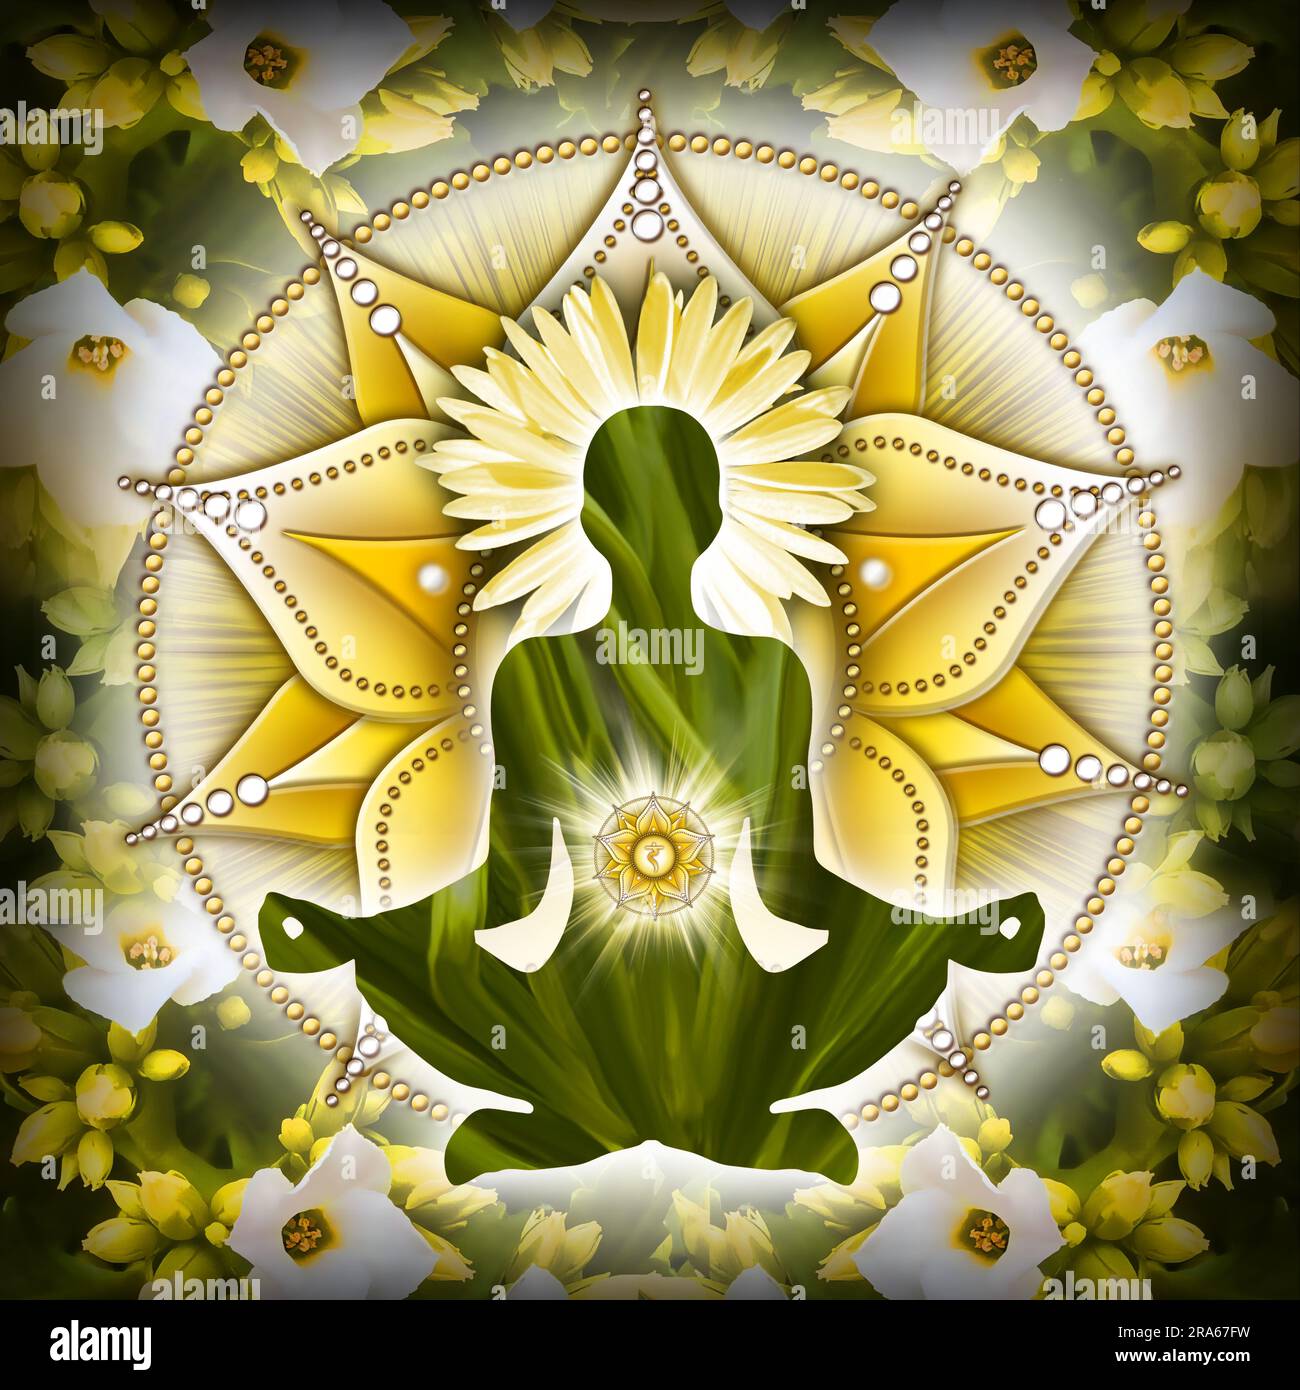 Méditation chakra du plexus solaire en posture du lotus yoga, devant le symbole du chakra Manipura et de belles fleurs printanières. Banque D'Images